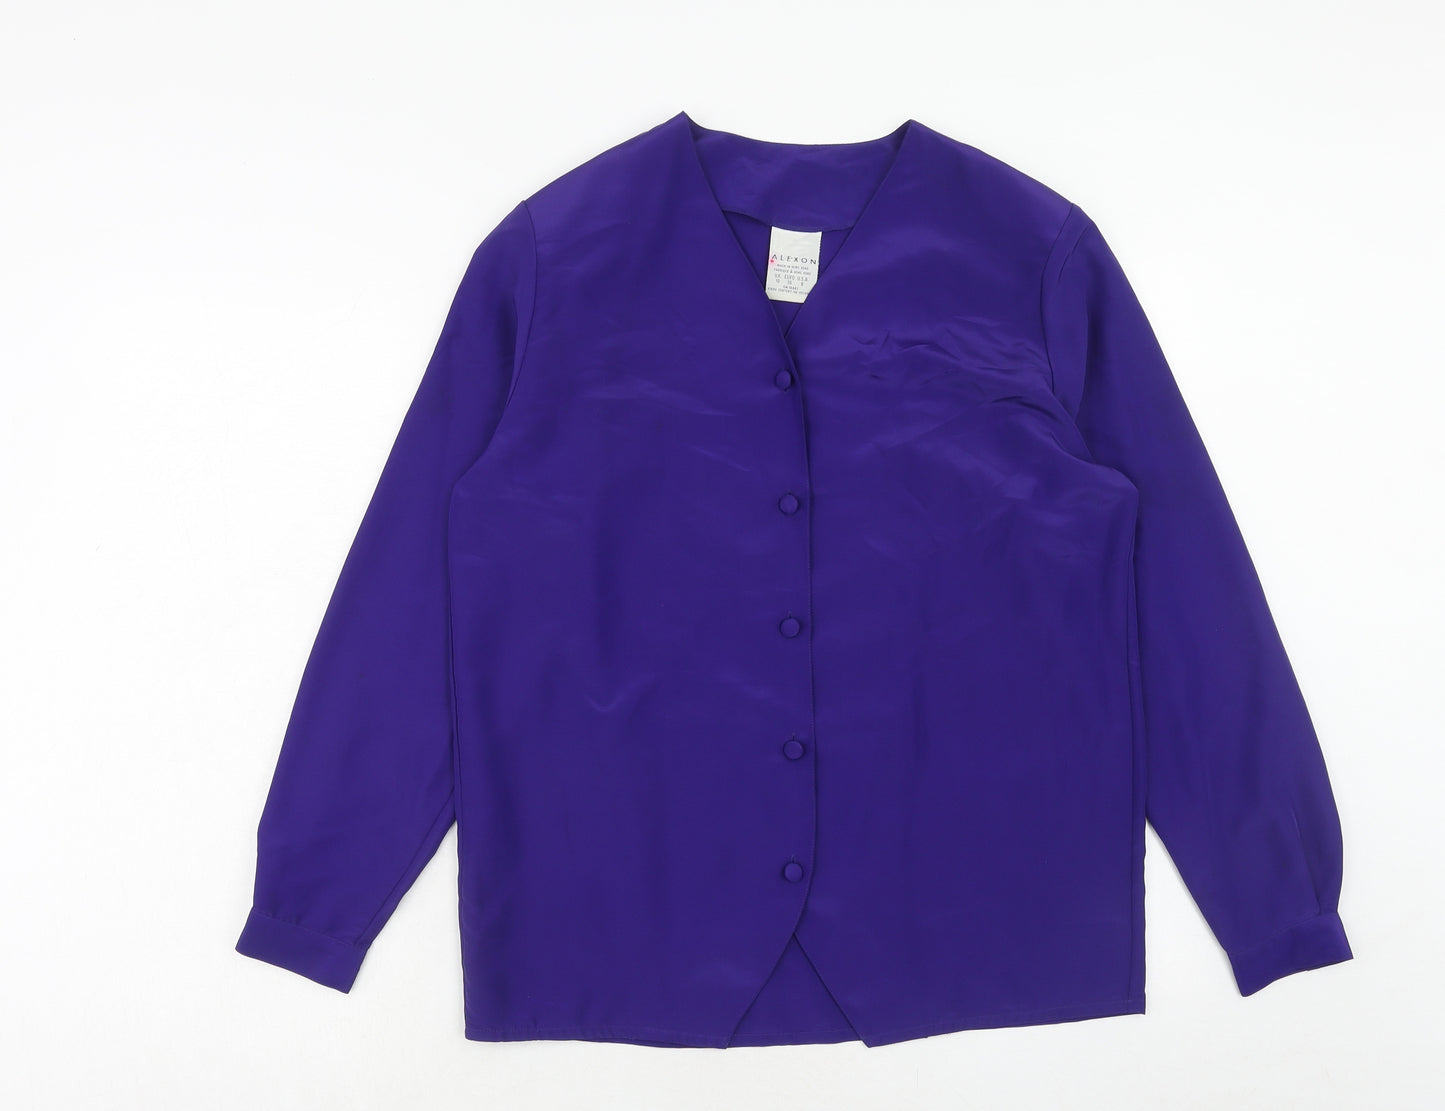 Alexon Womens Purple Polyester Basic Button-Up Size 10 V-Neck